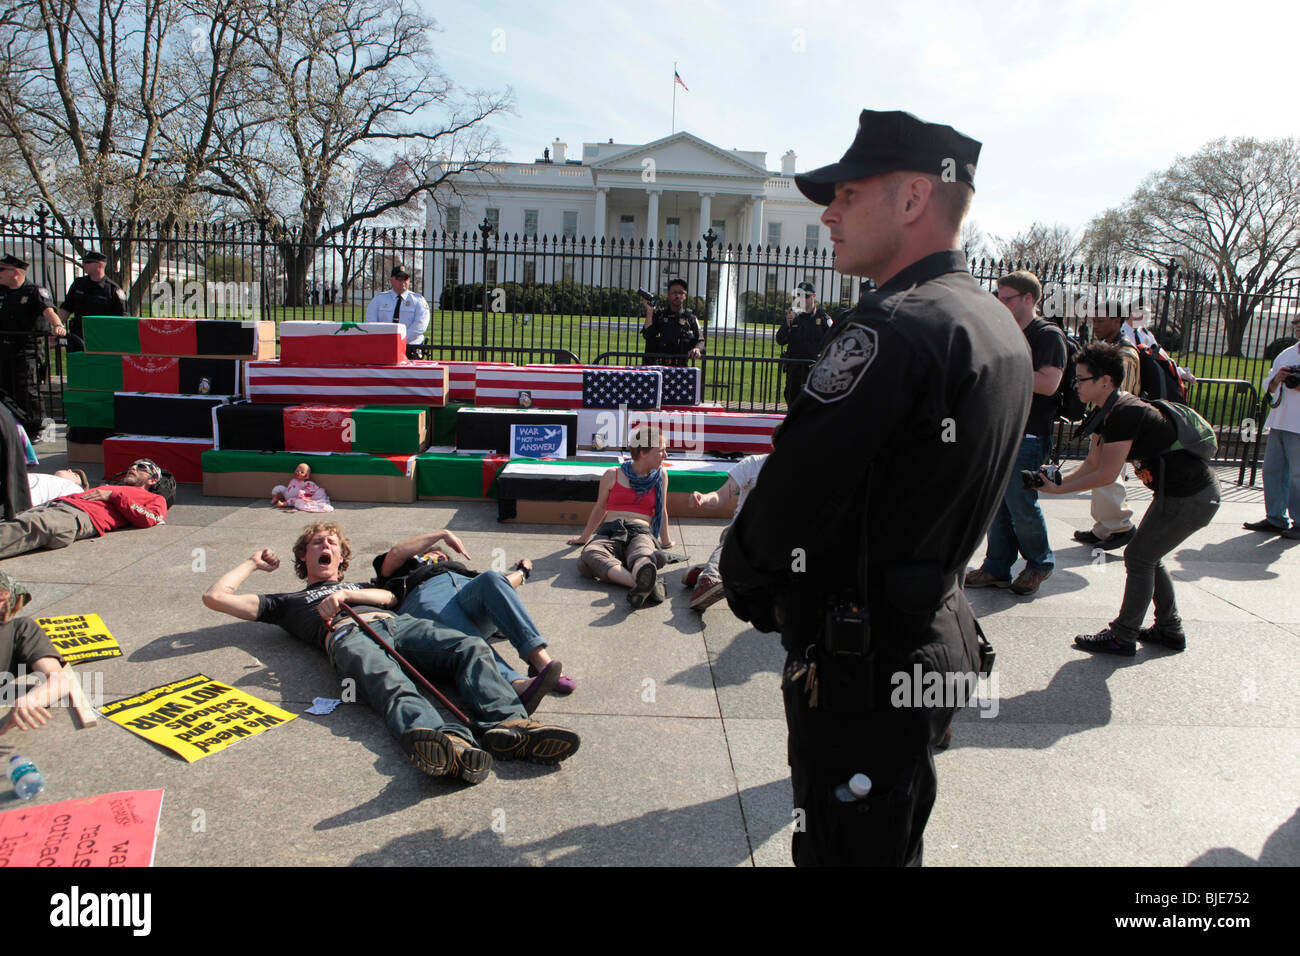 Entouré de manifestants cercueils sur trottoir à Maison Blanche sur le point d'être arrêté par la police. Manifestation anti-guerre. Marche sur Washington. 20 mars, 2010 Banque D'Images